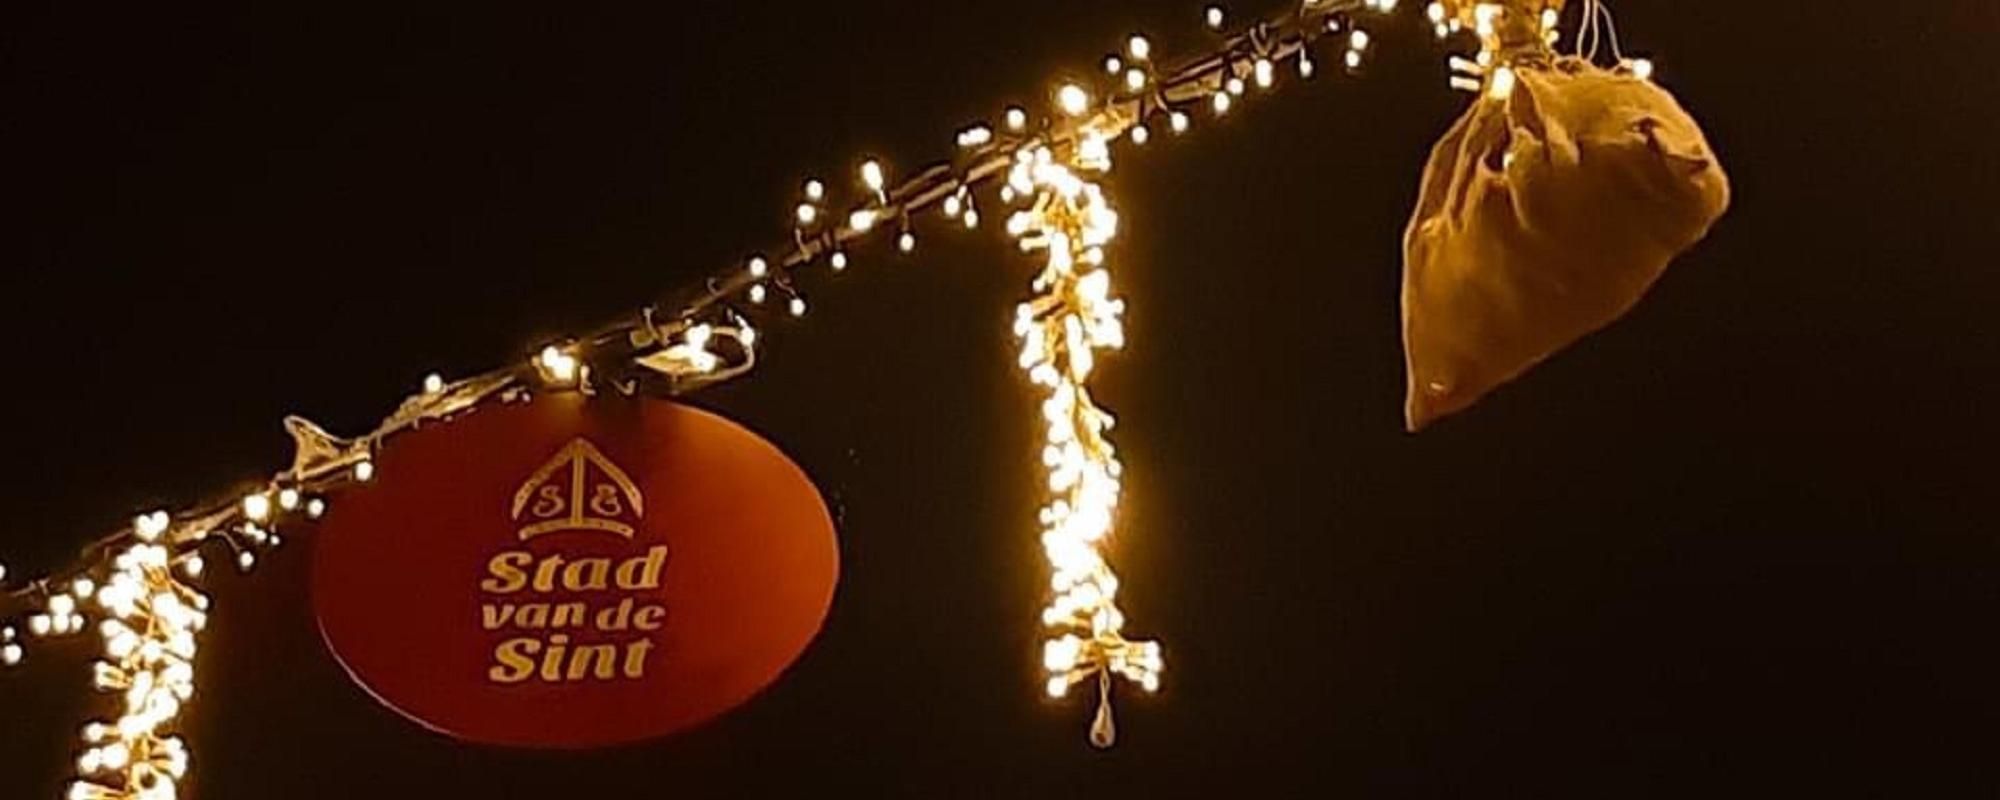 Sinterklaasversiering aan een slinger met lichtjes tegen de donkere avondhemel